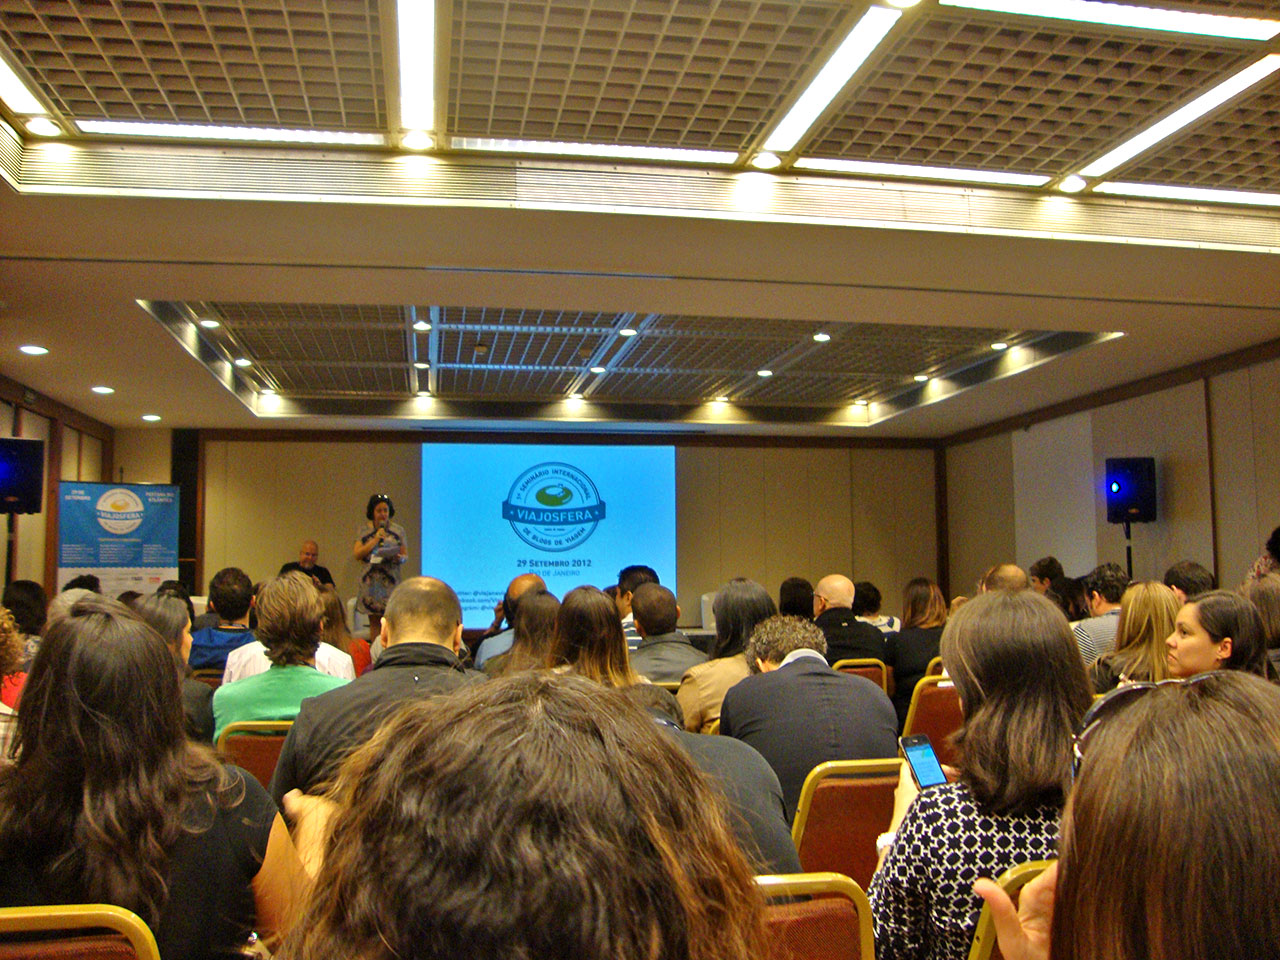 Participação no Seminário Viajosfera 2012 no Rio de Janeiro